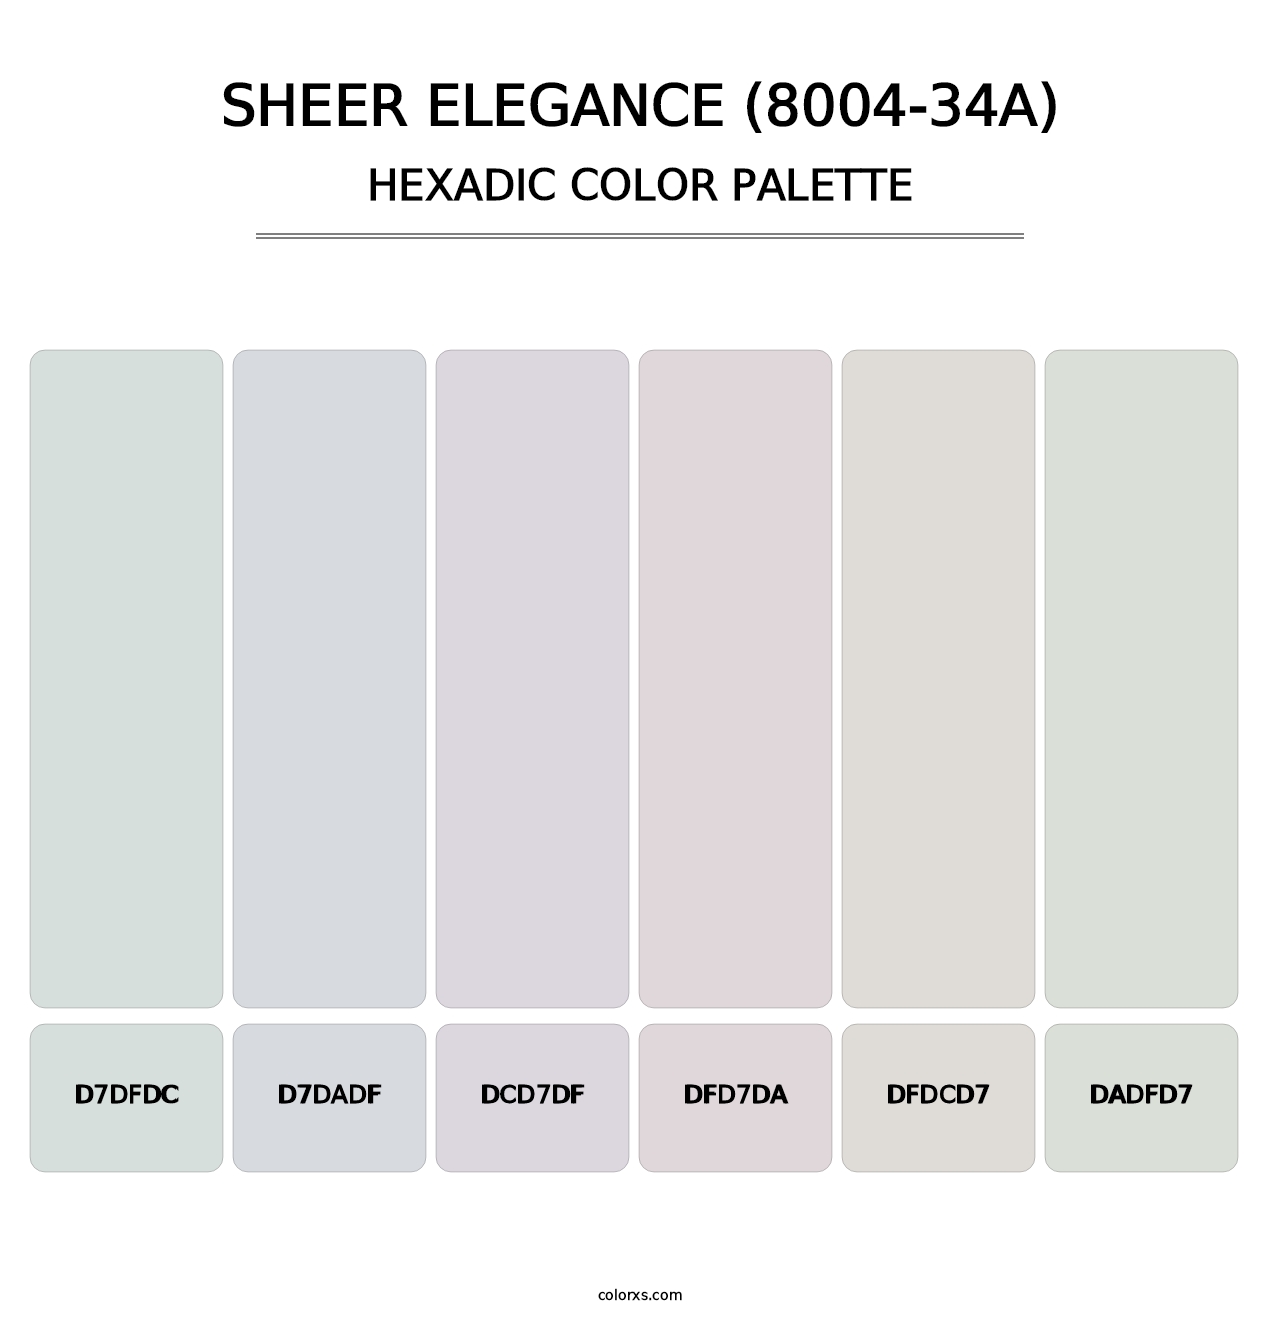 Sheer Elegance (8004-34A) - Hexadic Color Palette